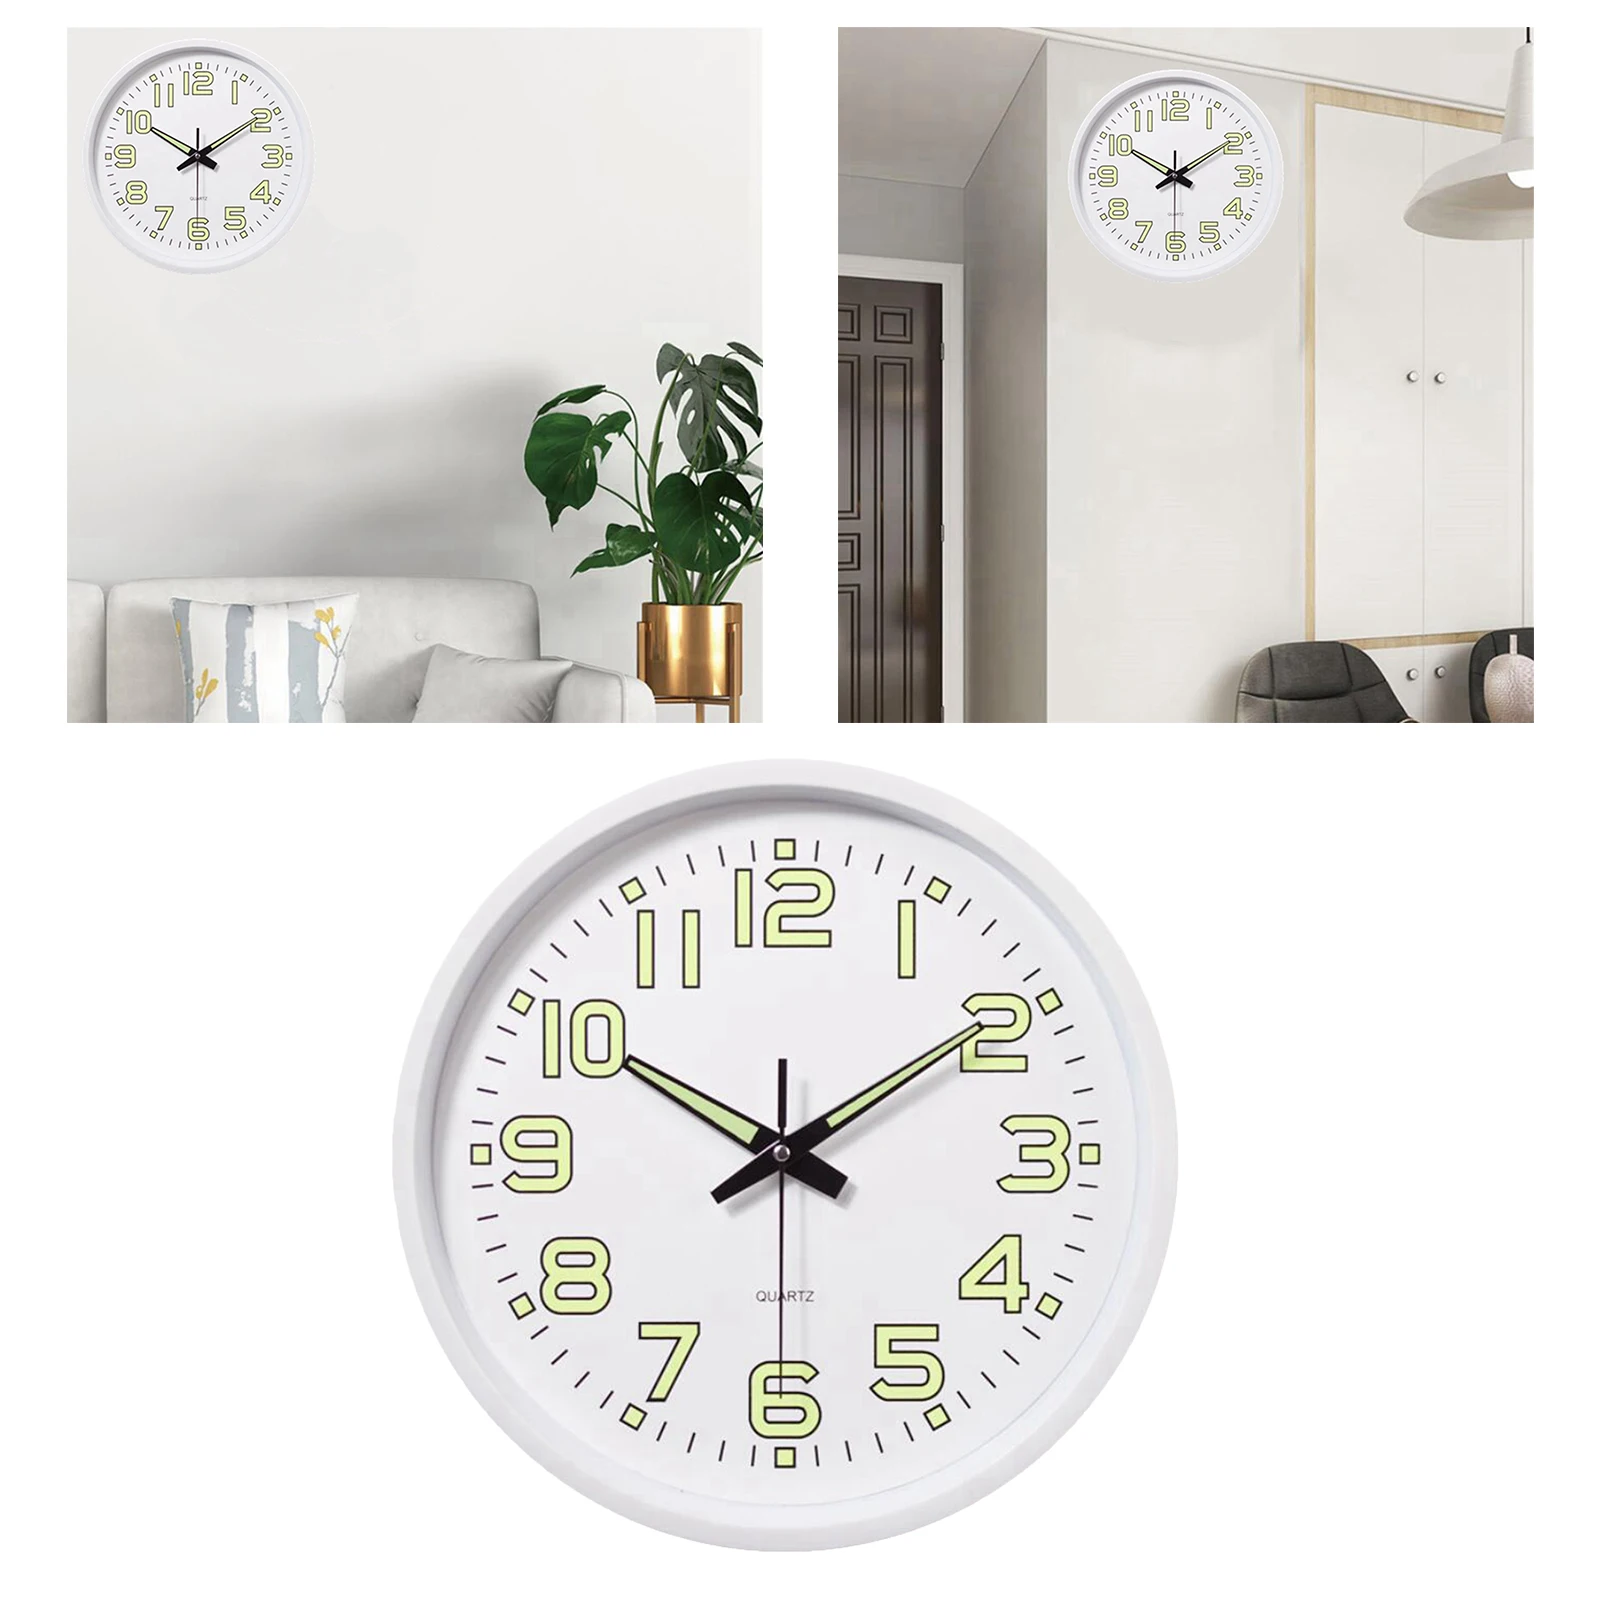 12 Inch Luminous Minimalist Wall Clock Night Lights Round Wall Clock Decorative Wall Clock Home/Office/Classroom/School Clock